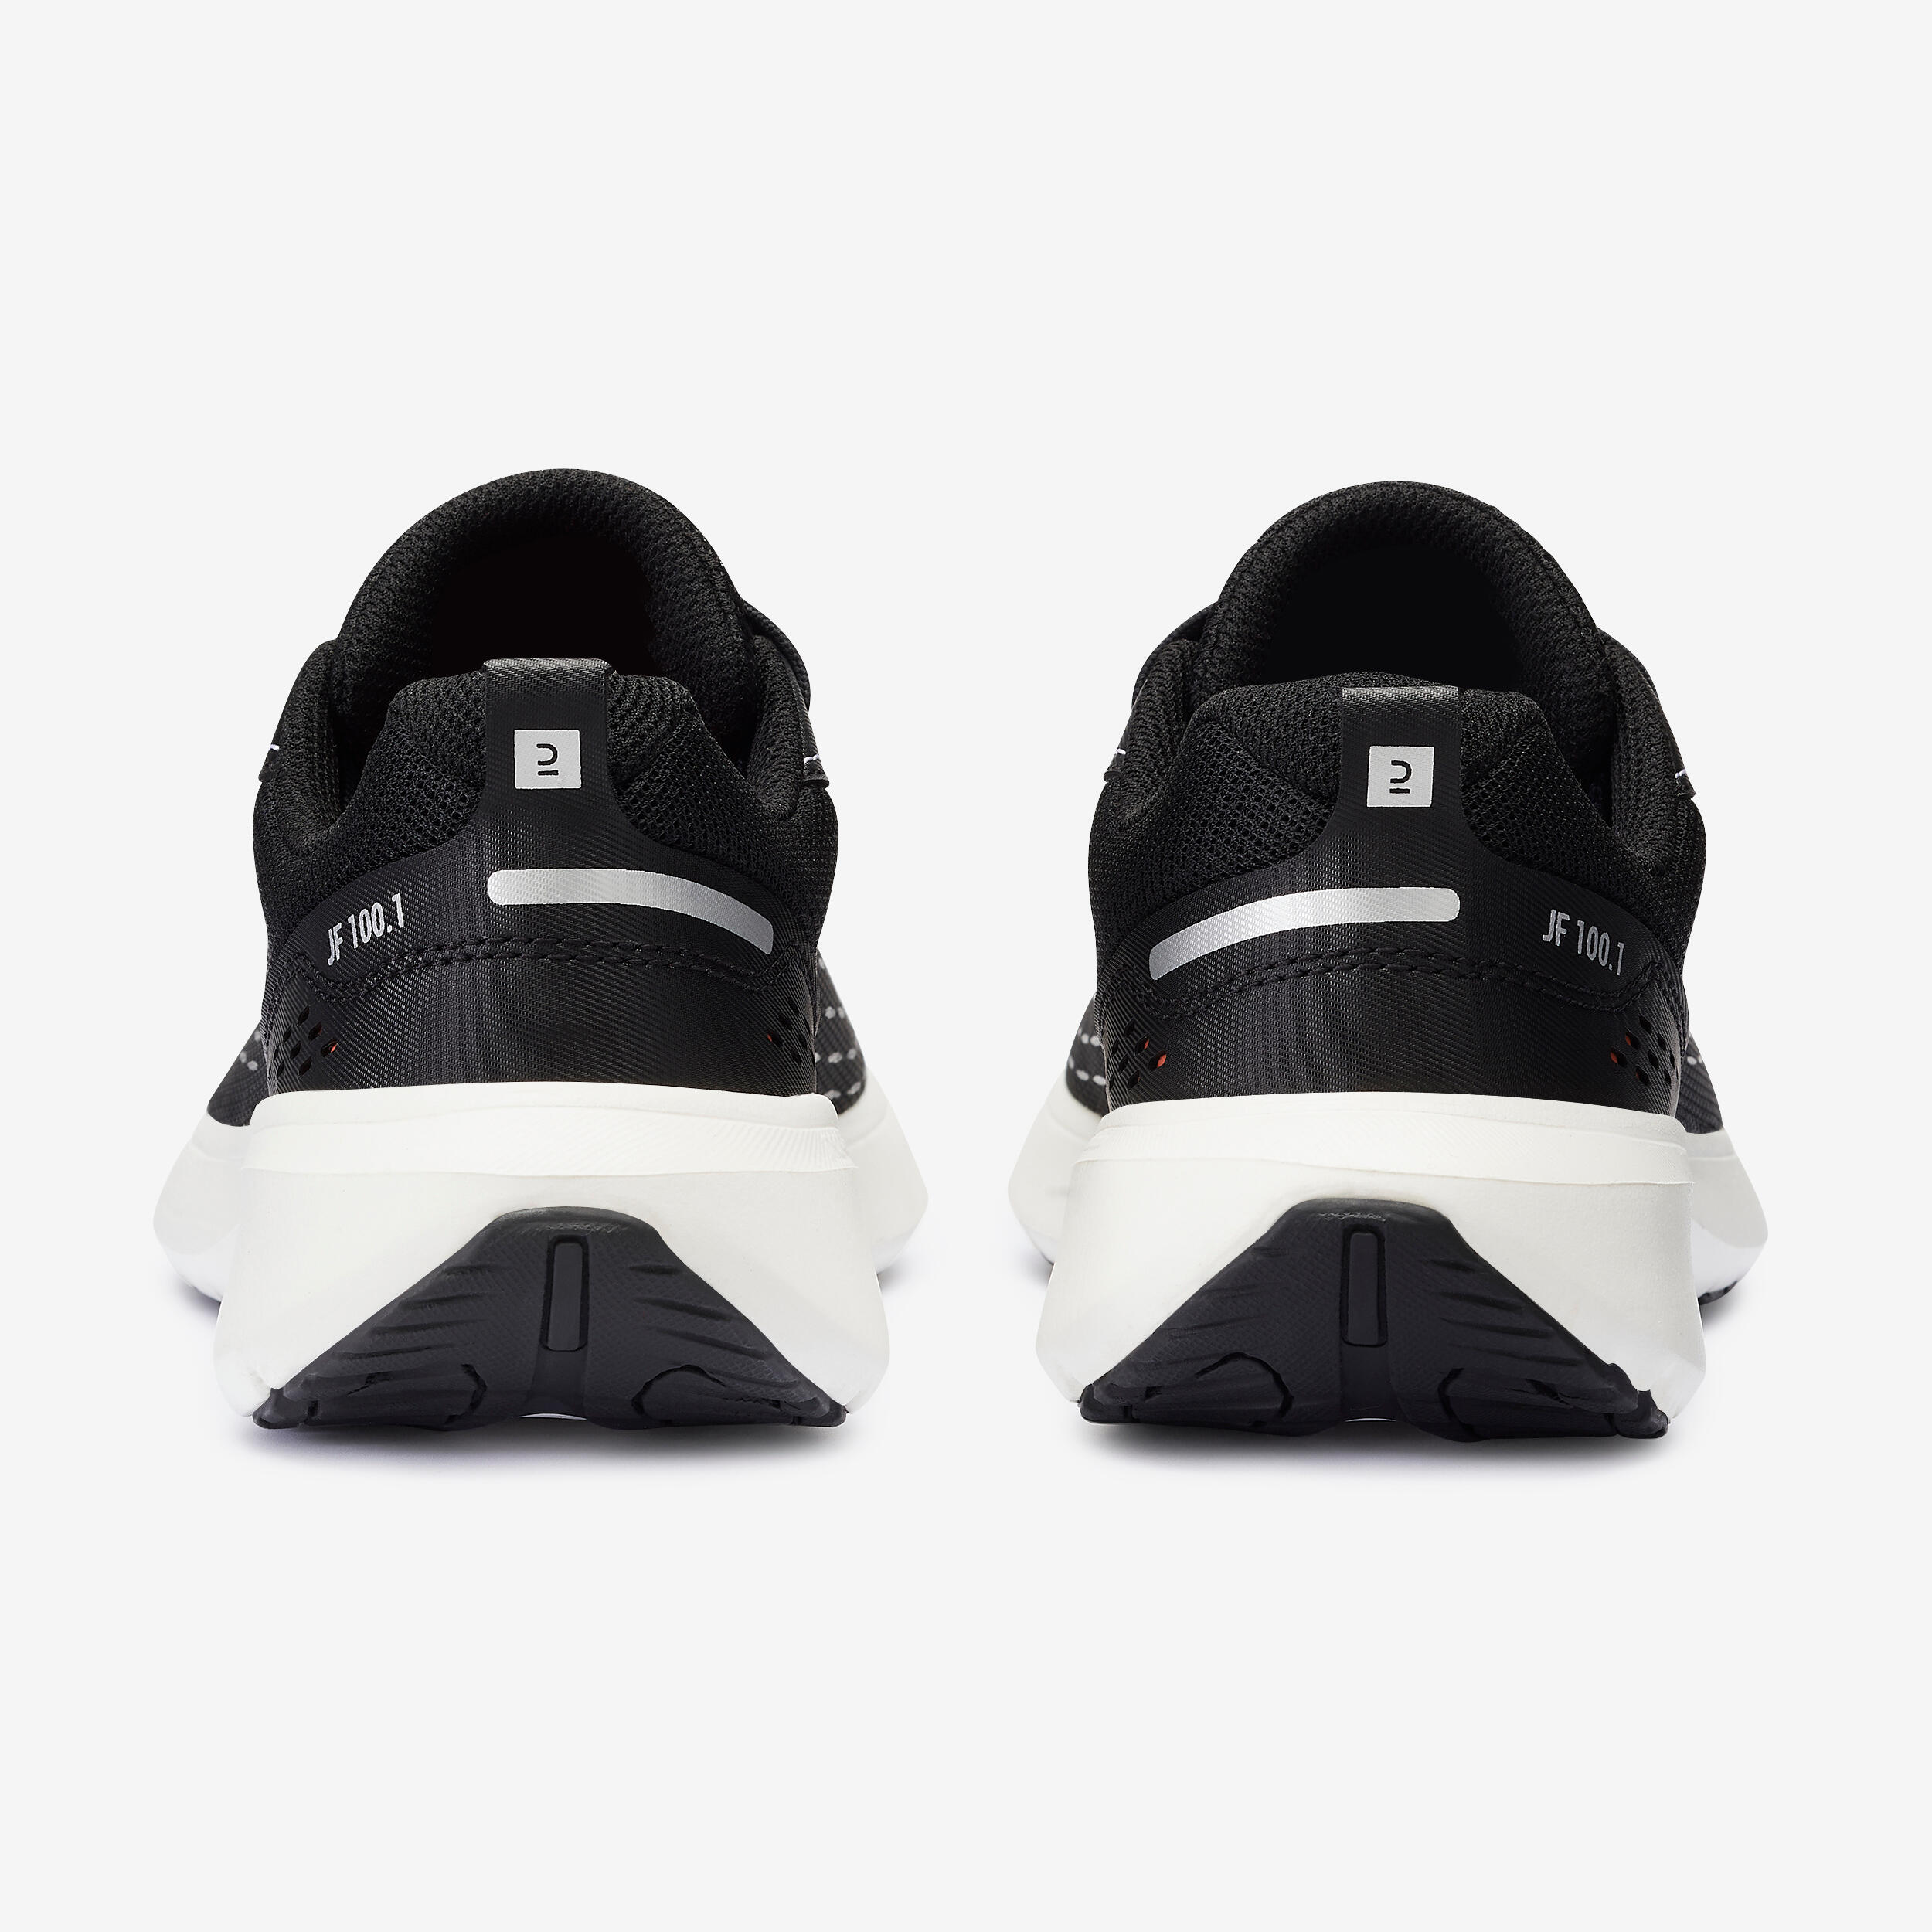 Women’s Running Shoes - Jogflow 100.1 Black - KALENJI